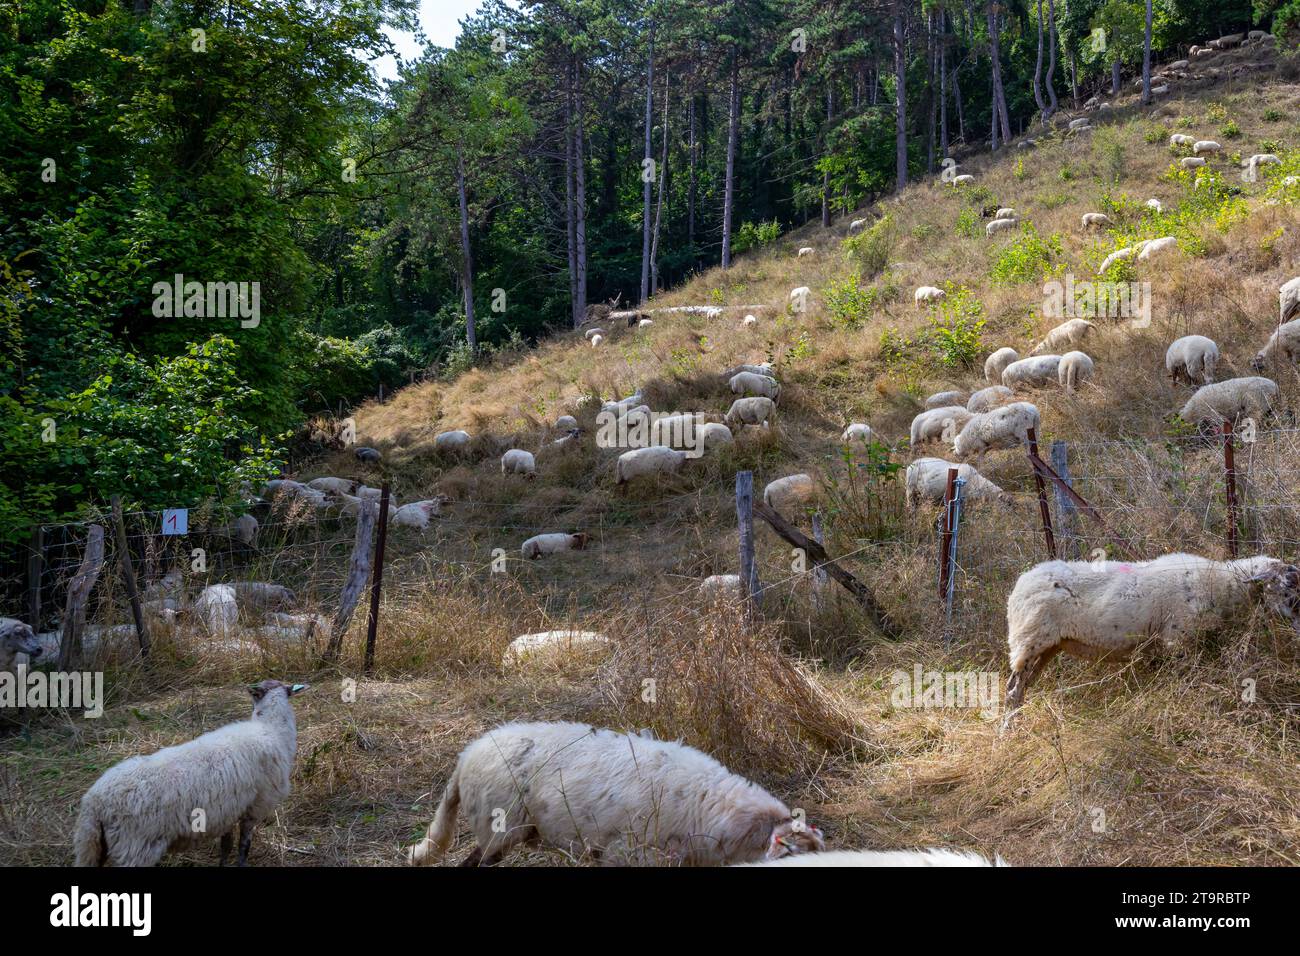 Paesaggio agricolo del bestiame belga con gregge di pecore bianche che pascolano su una collina, alberi lussureggianti con vegetazione verde sullo sfondo, accanto a Th Foto Stock